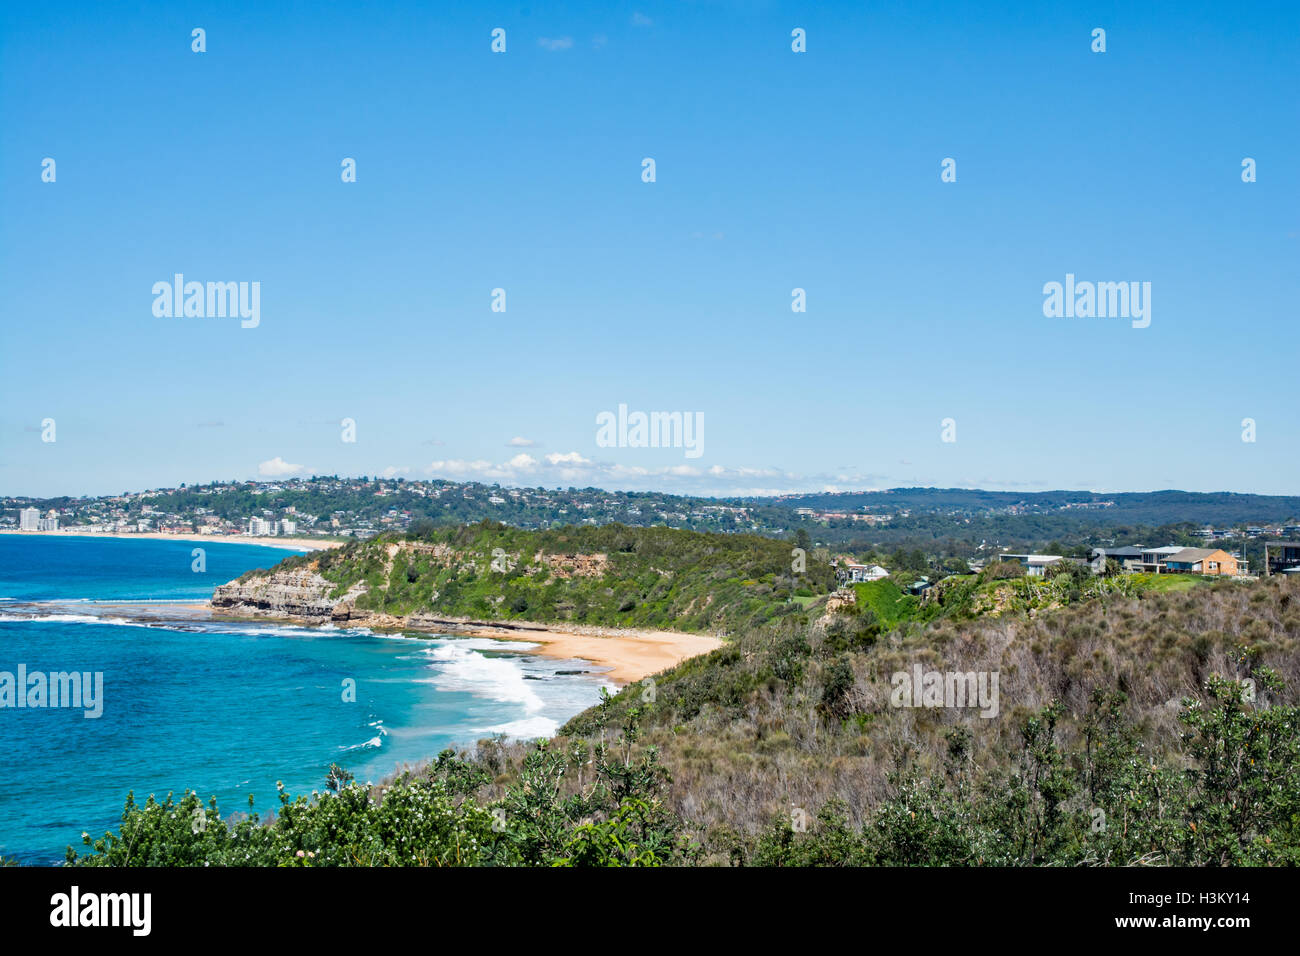 En regardant vers le sud sur la plage de Narrabeen Turimetta avec tête à moyenne distance.Sydney Australie. Banque D'Images